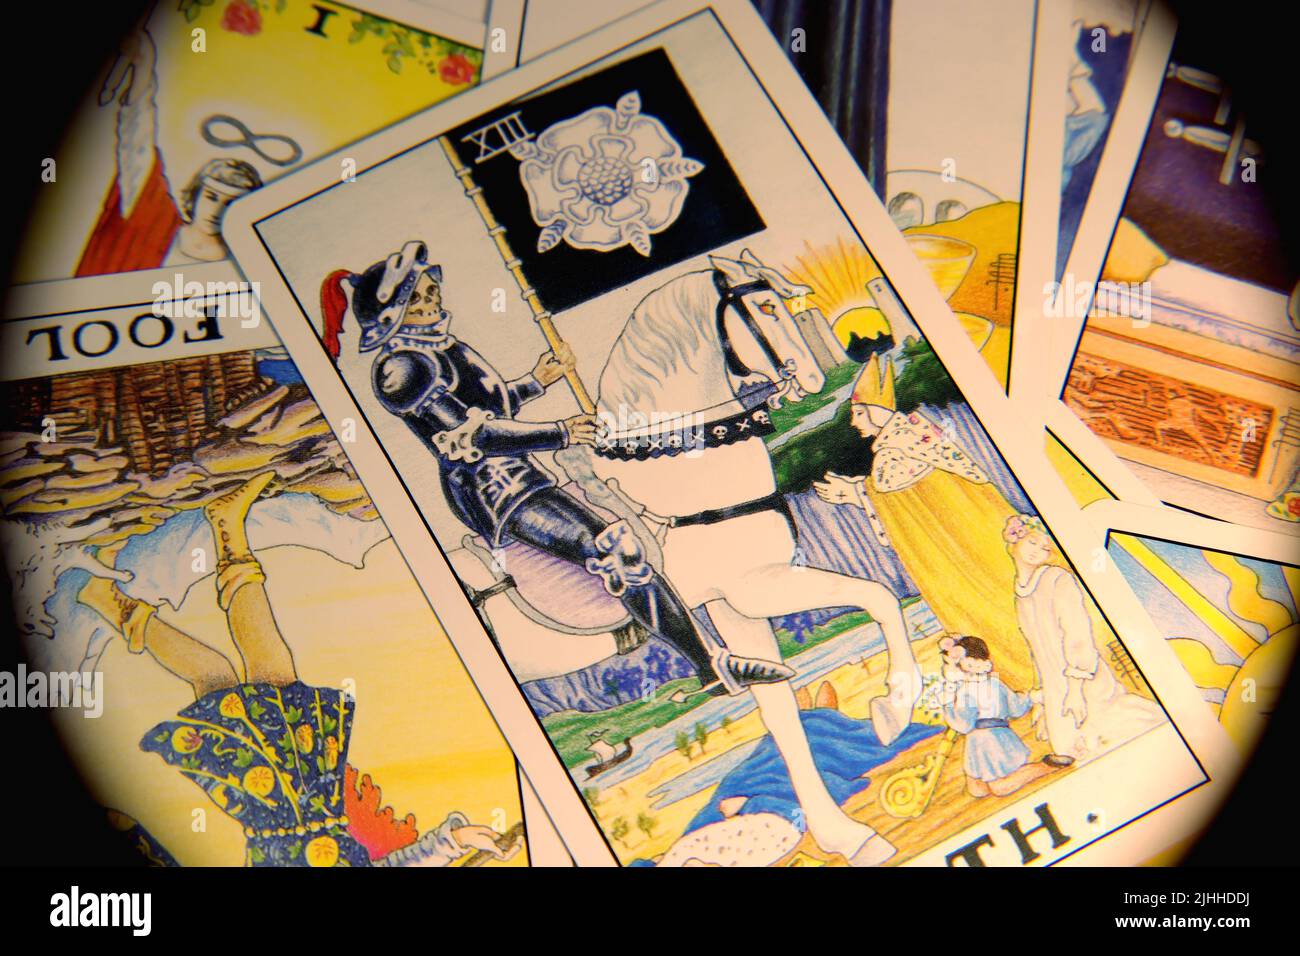 Traditionelle Tarot-Karten, die in einem unordentlichen Stapel auf einer flachen Oberfläche liegen, nah genug, um jedes Detail zu sehen. Echte Farben. Kein Filter. Stockfoto